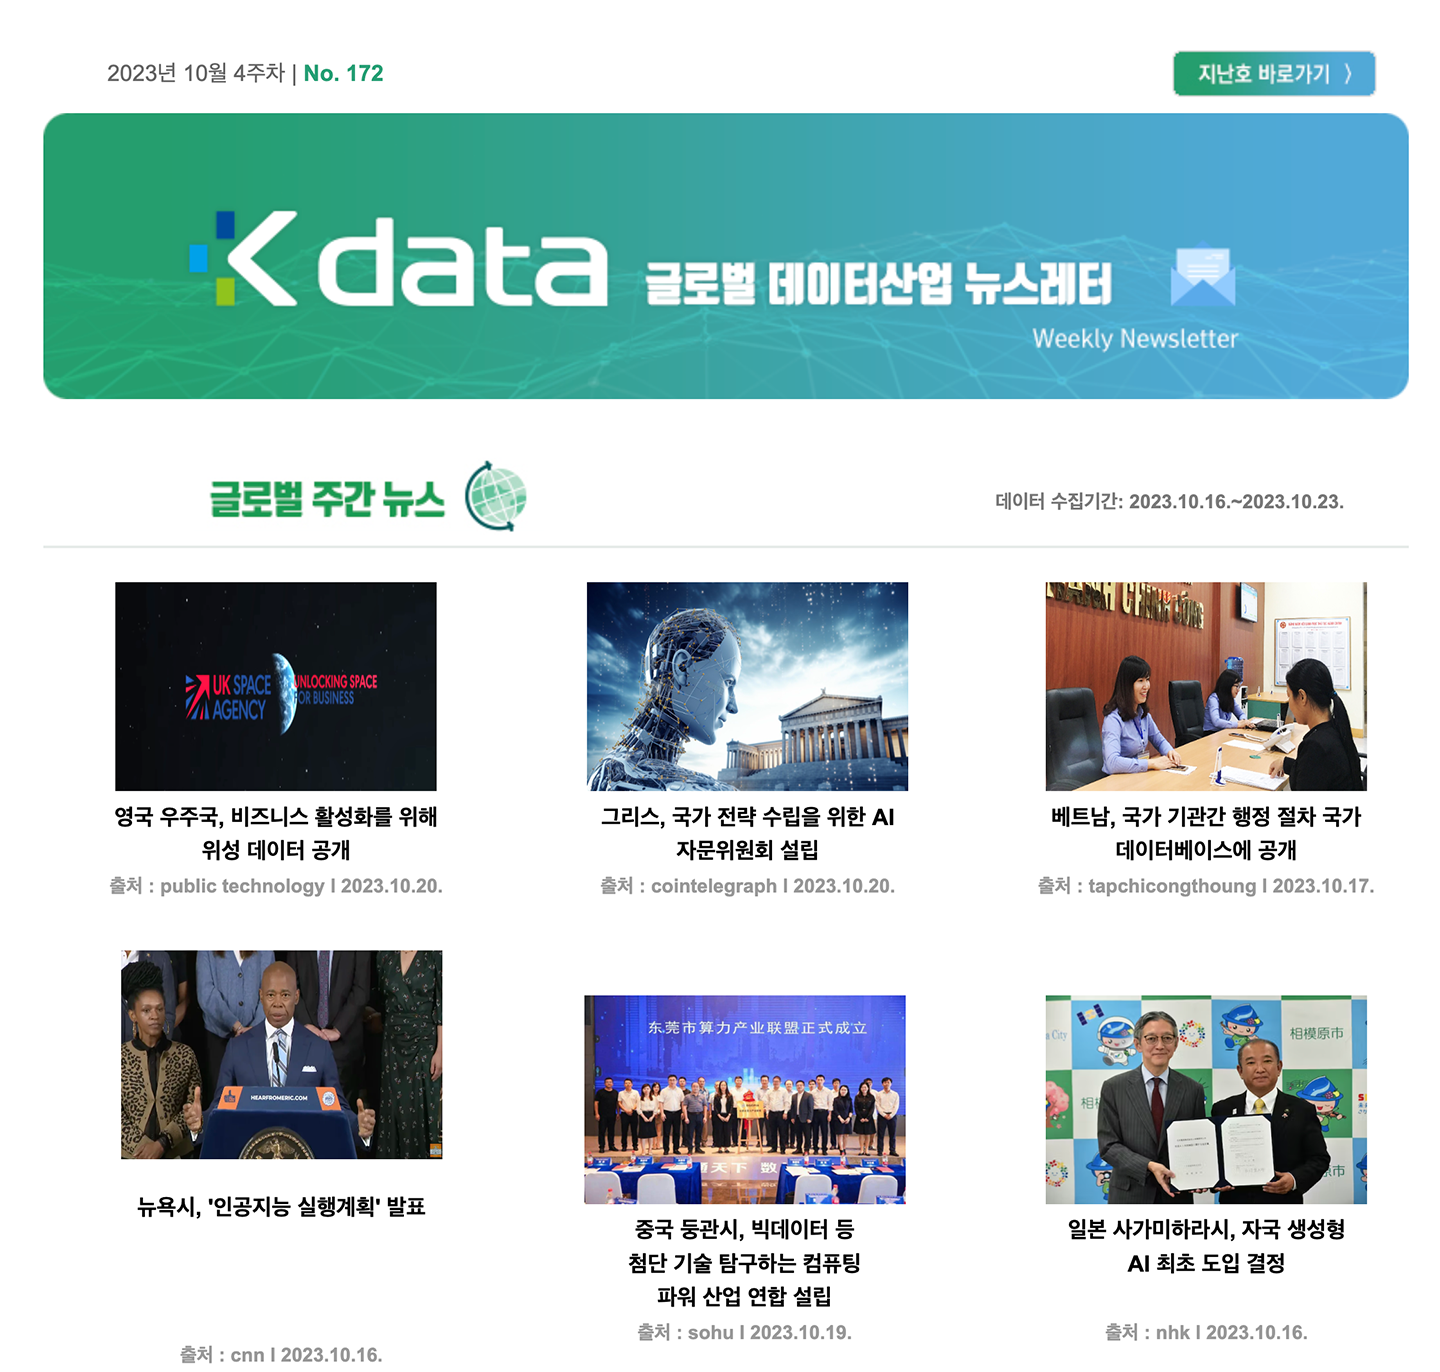 Kdata 글로벌 데이터산업 뉴스레터 2023년 10월 4주차